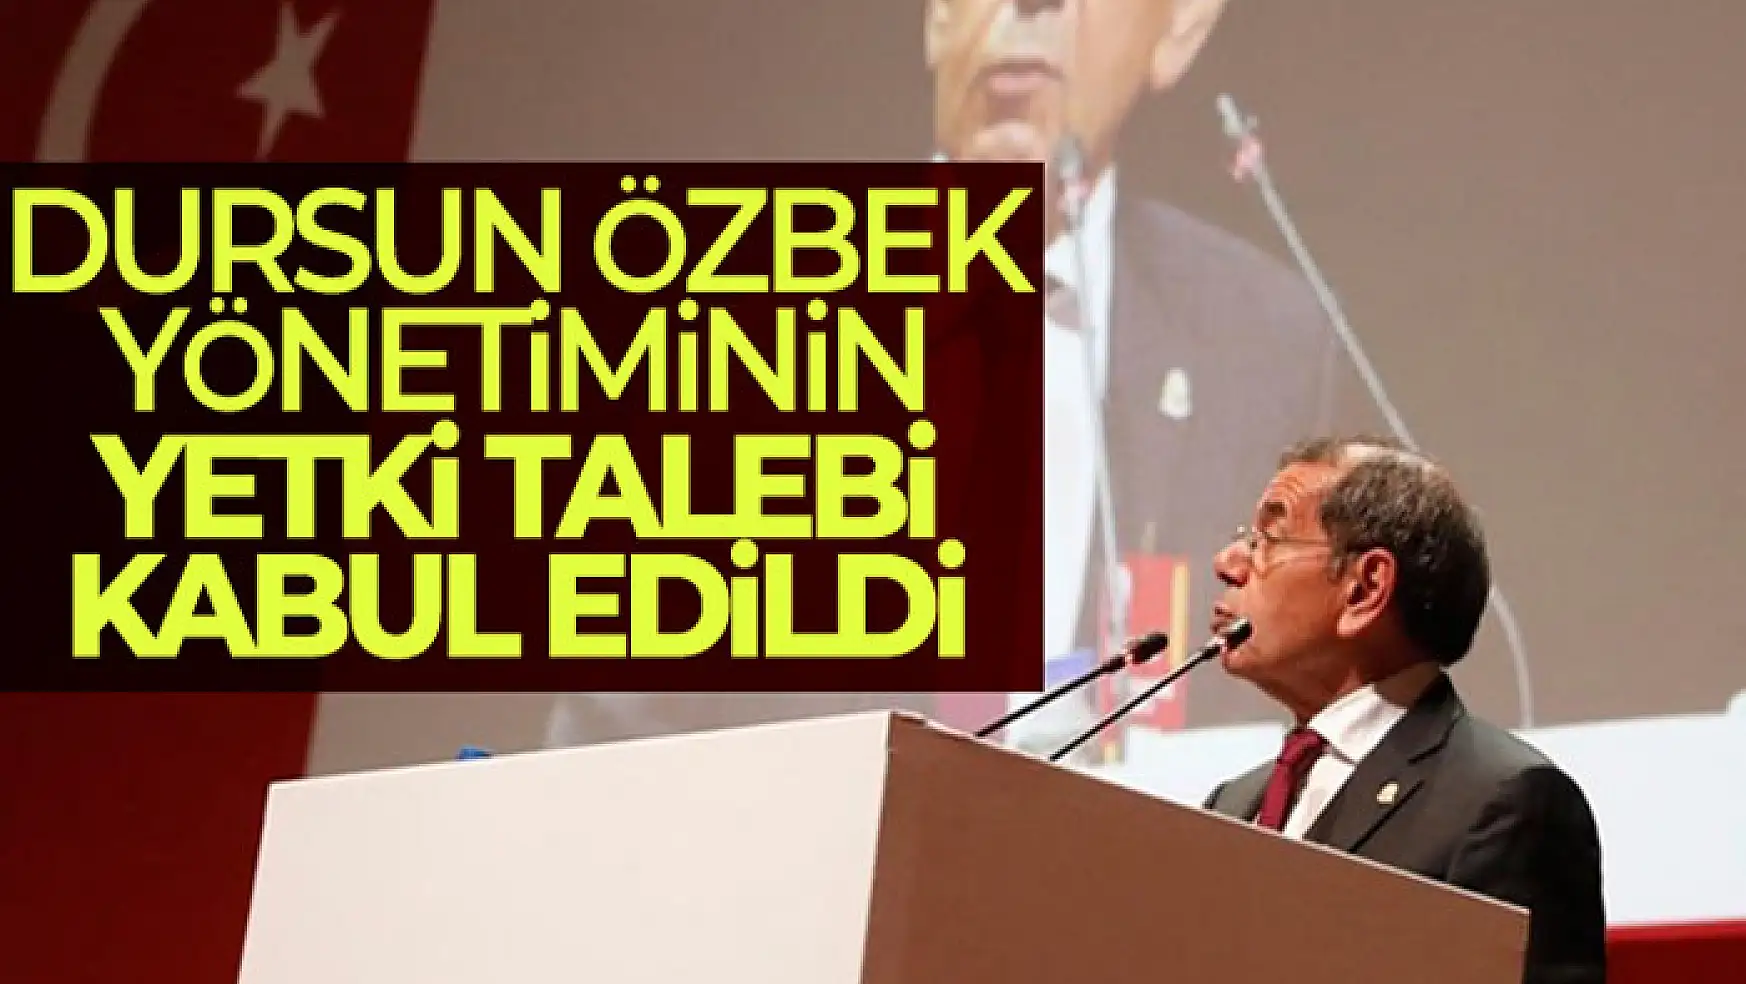 Dursun Özbek yönetiminin yetki talebi kabul edildi!